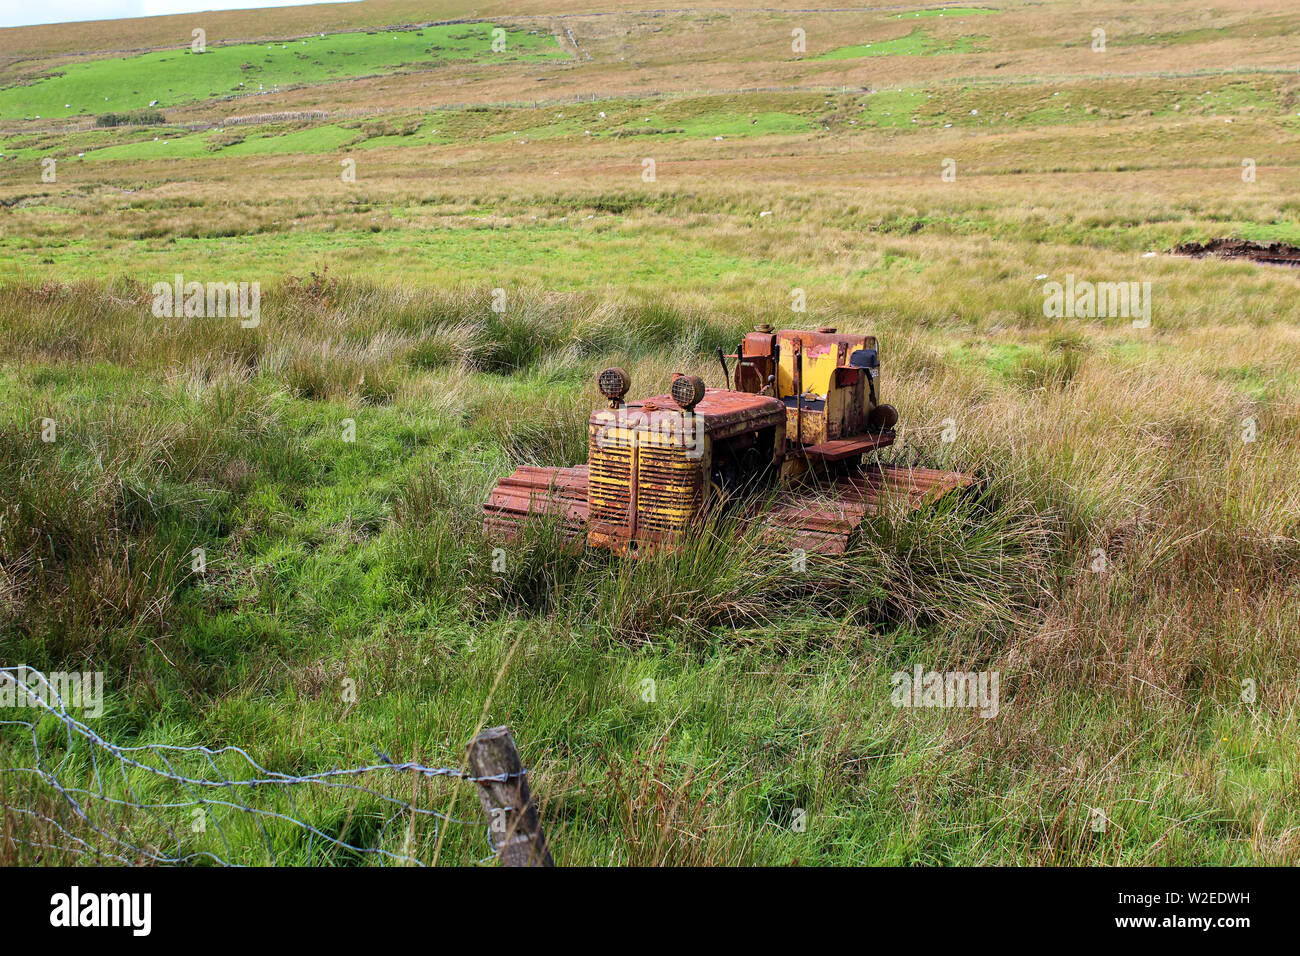 Rostig und zog sich auf der schottischen Grenze. Ein caterpillar Radtraktoren - rostigen alten landwirtschaftlichen Maschinen in der Galloway Hills, Schottland verlassen Stockfoto